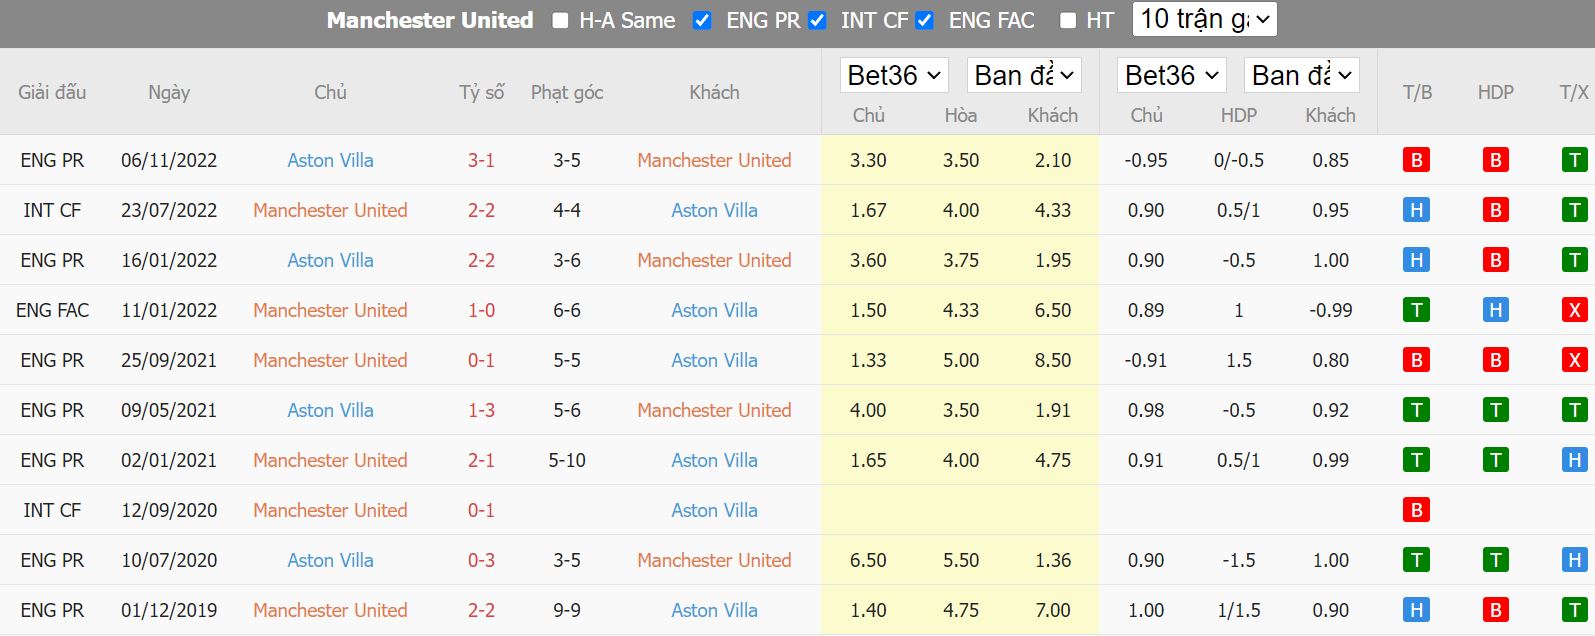 Thành tích gần đây của Man Utd vs Aston Villa - Cup liên đoàn Anh